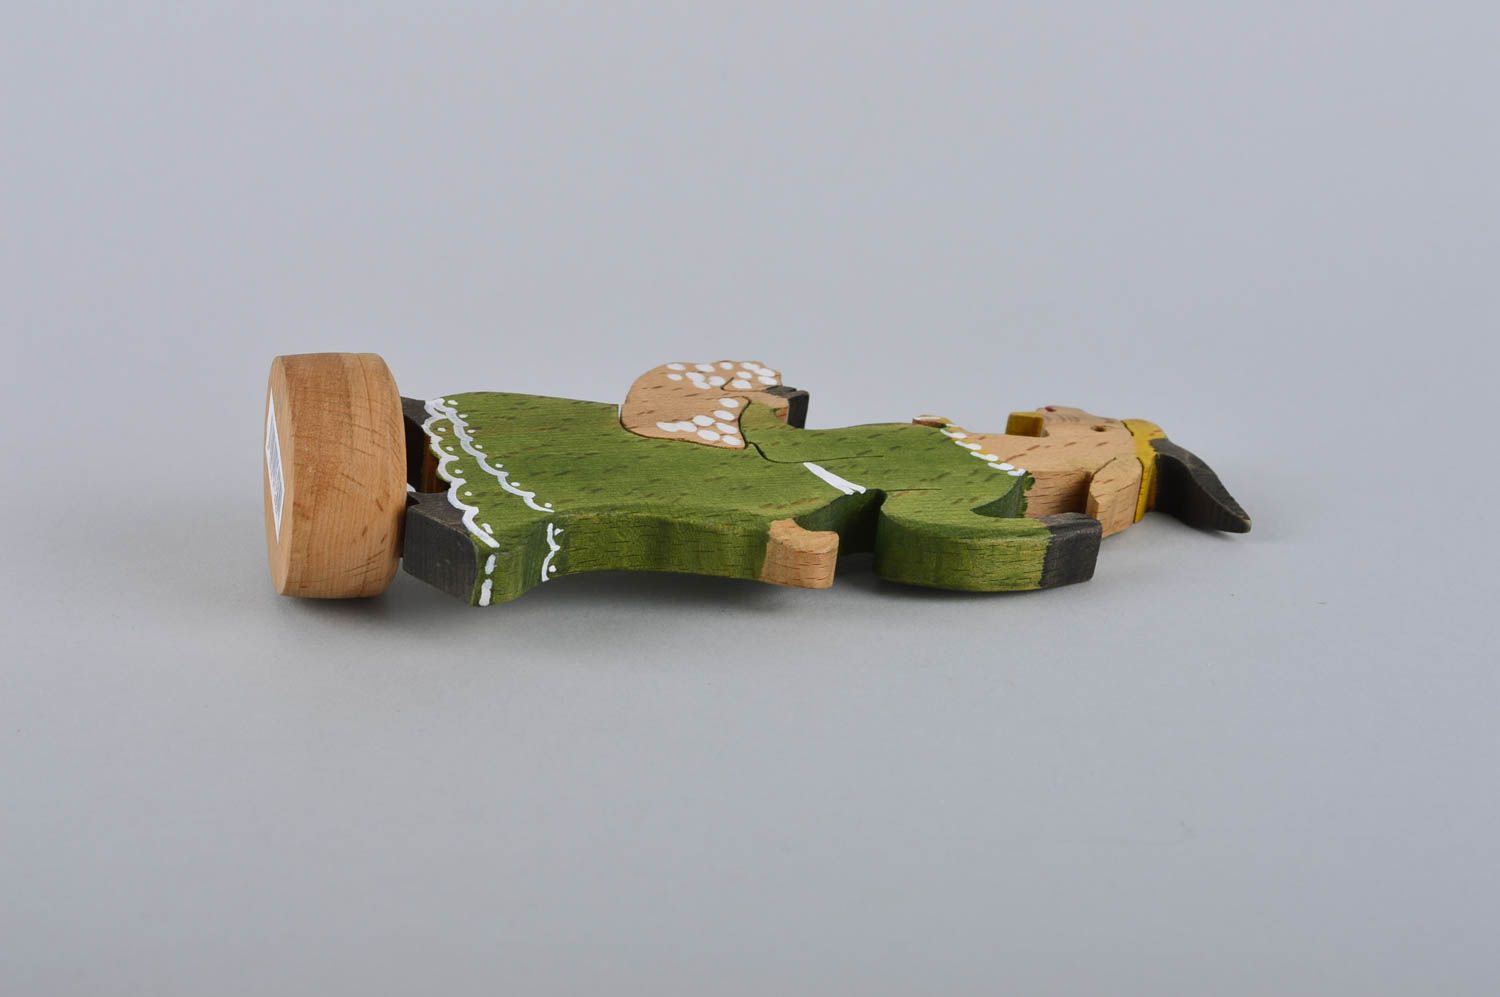 Игрушка ручной работы игрушка из дерева детская фигурка из дерева Козочка фото 4